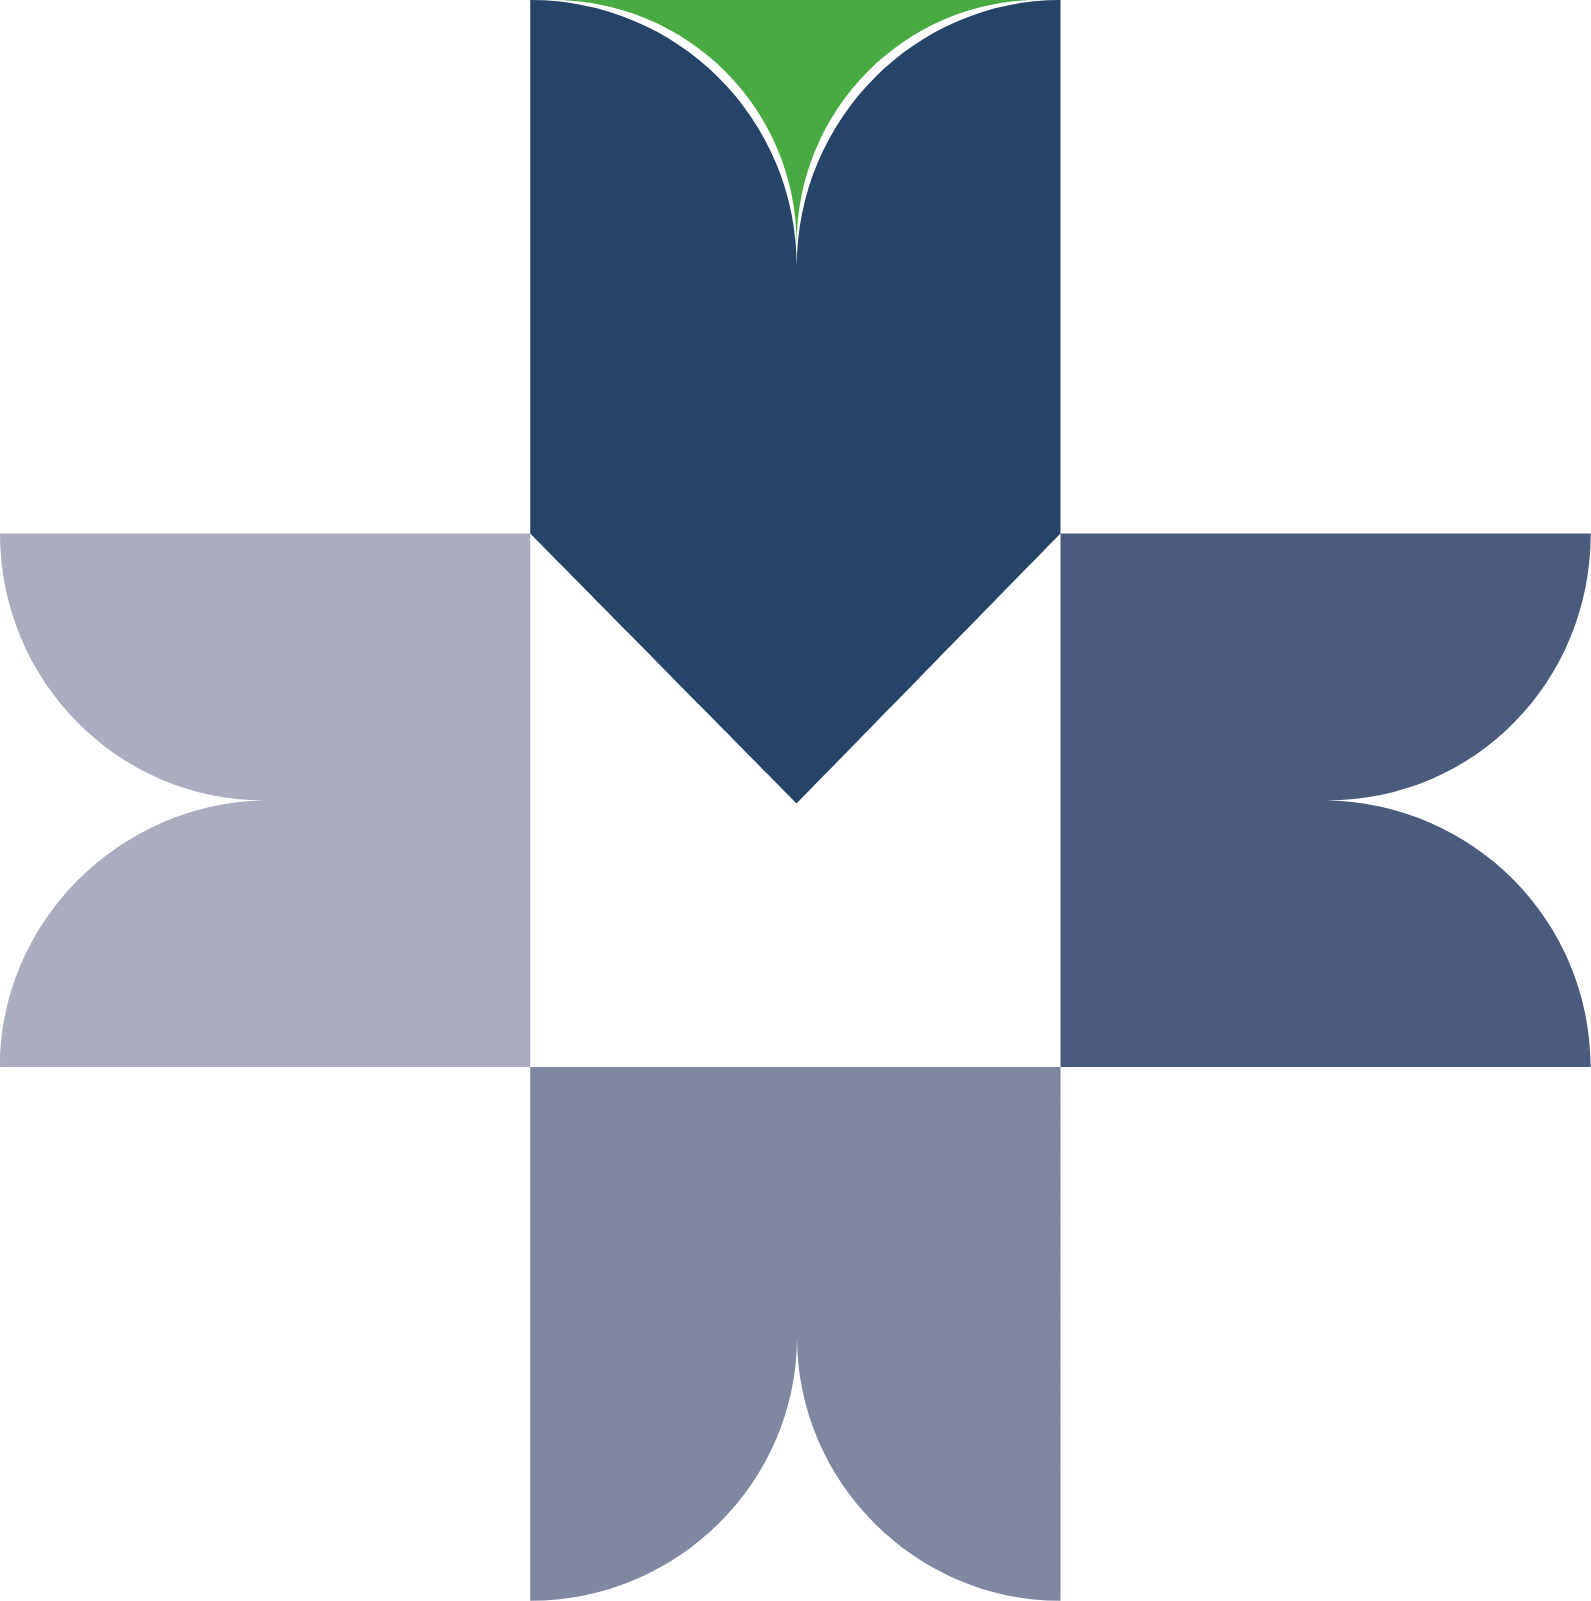 BMV (Bolsa Mexicana de Valores) logo (PNG transparent)